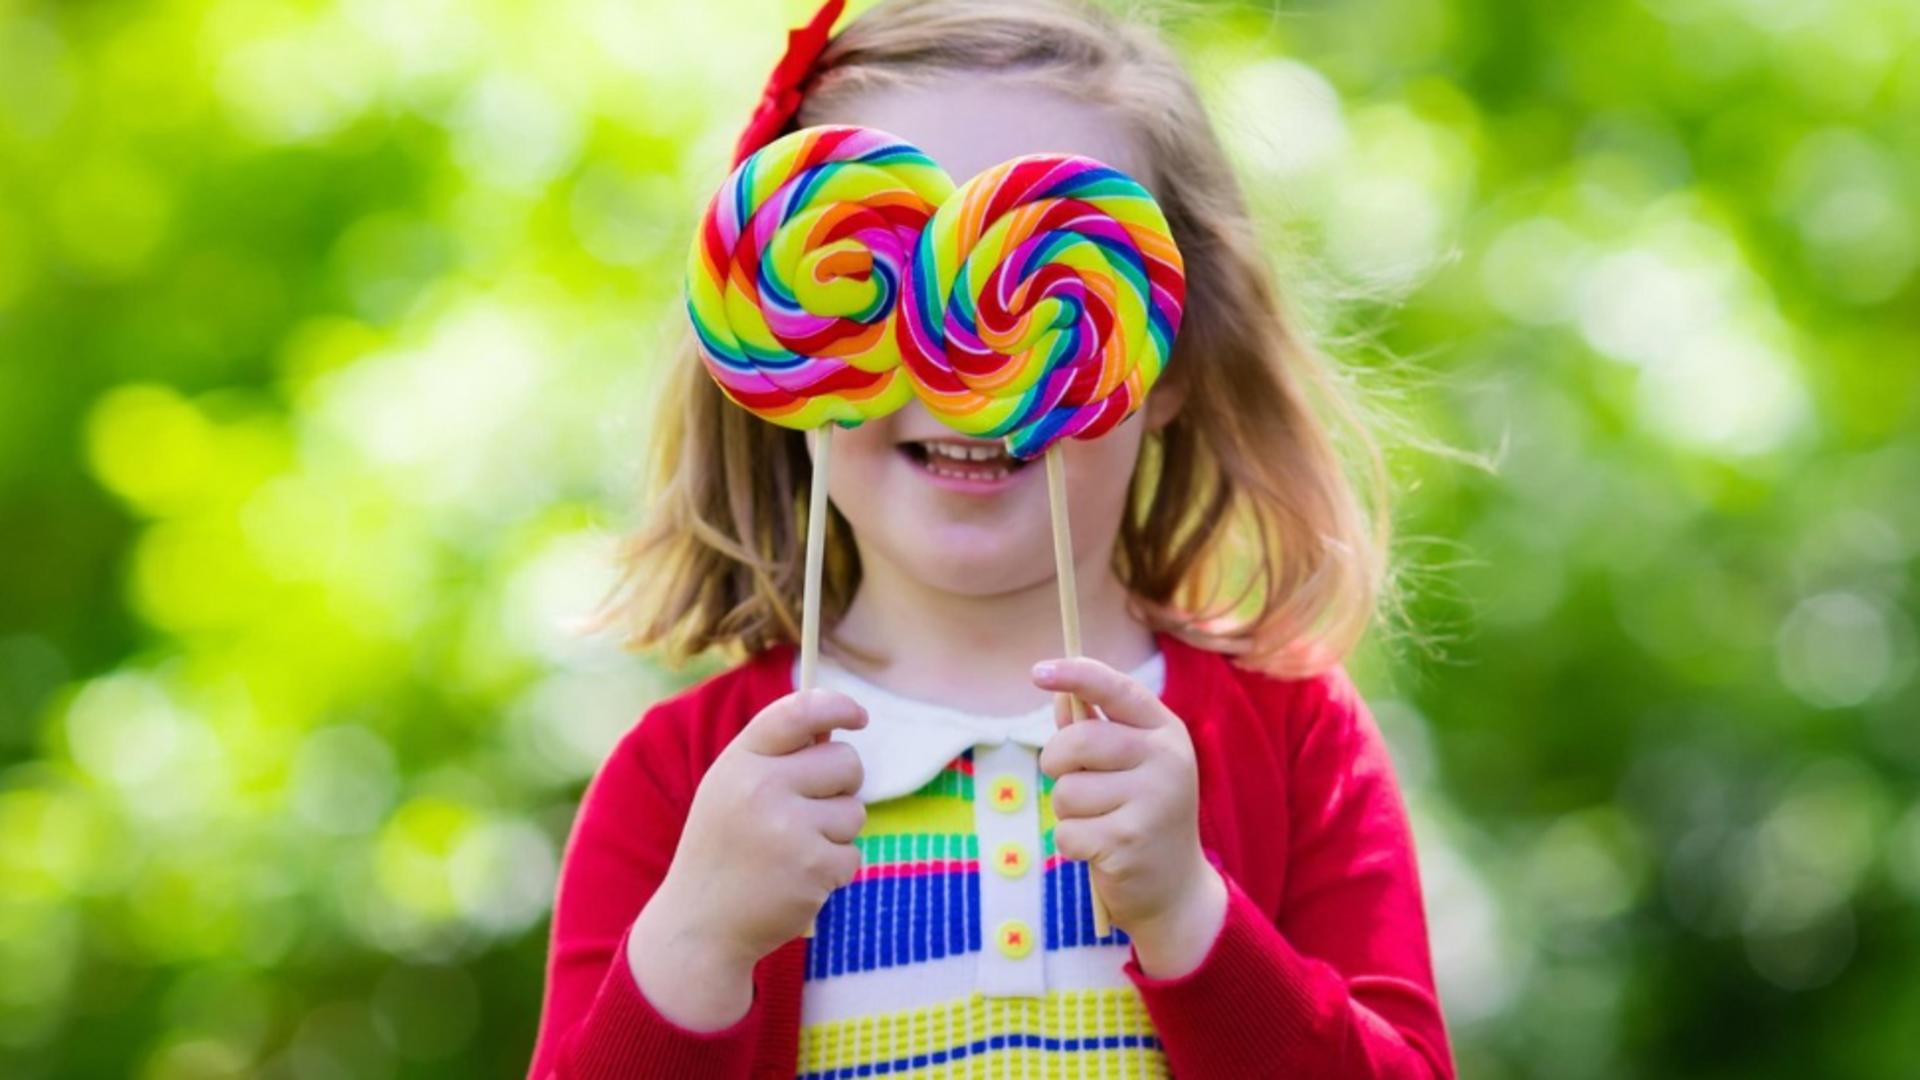 Întrebarea care macină orice părinte, dar mai ales pe bunici: Câte dulciuri poate mânca un copil?